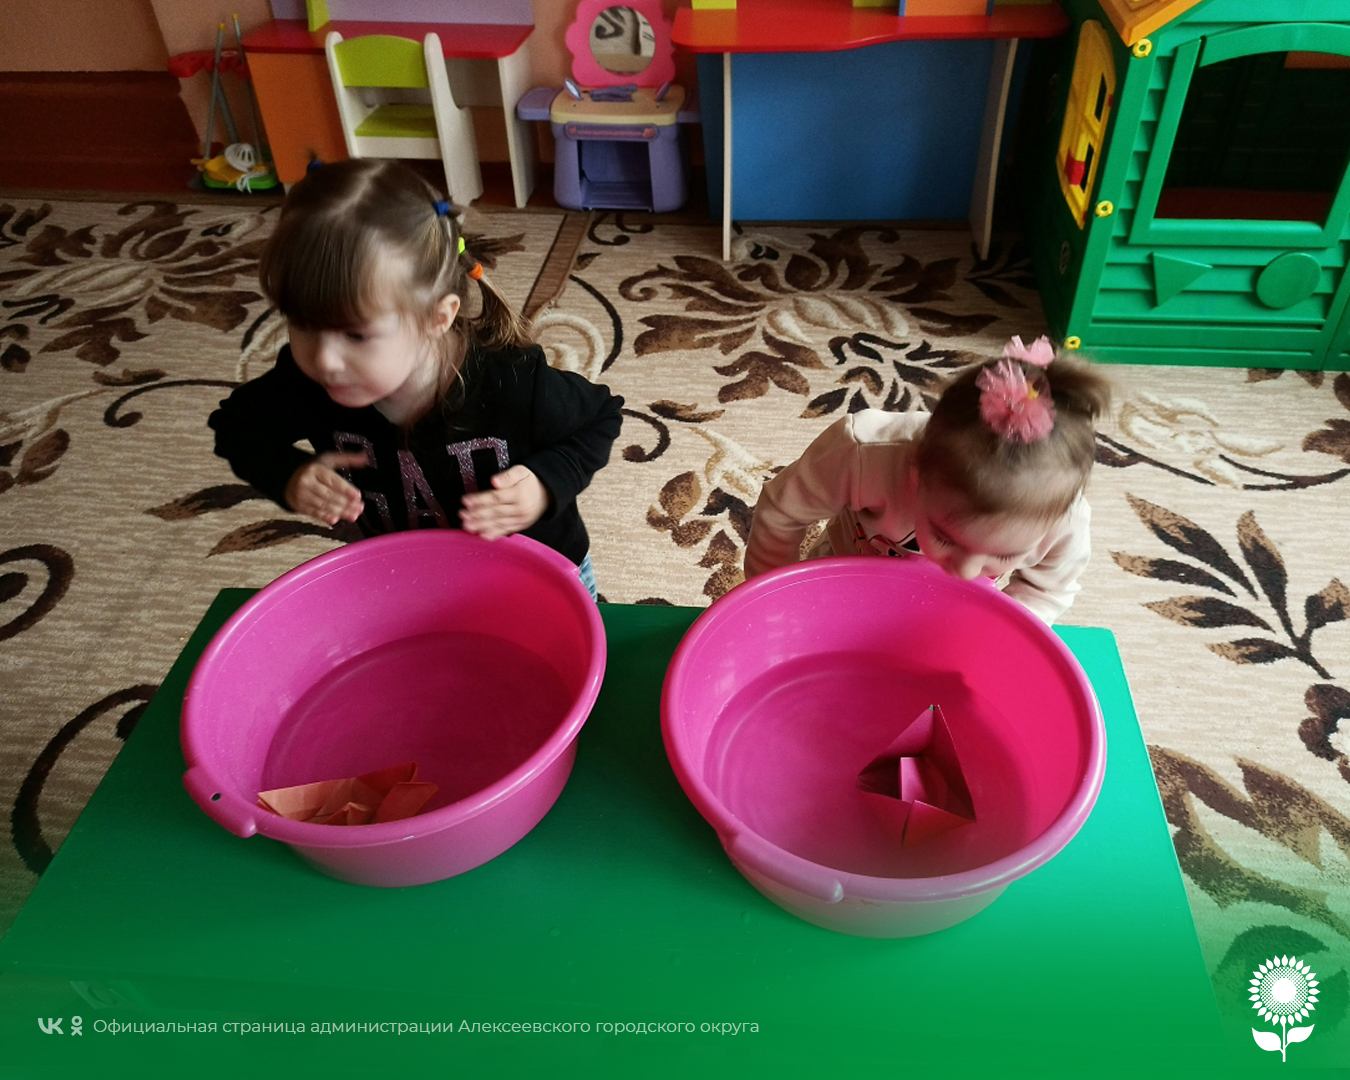 В детских садах Алексеевского городского округа прошел День игр и экспериментов с водой.